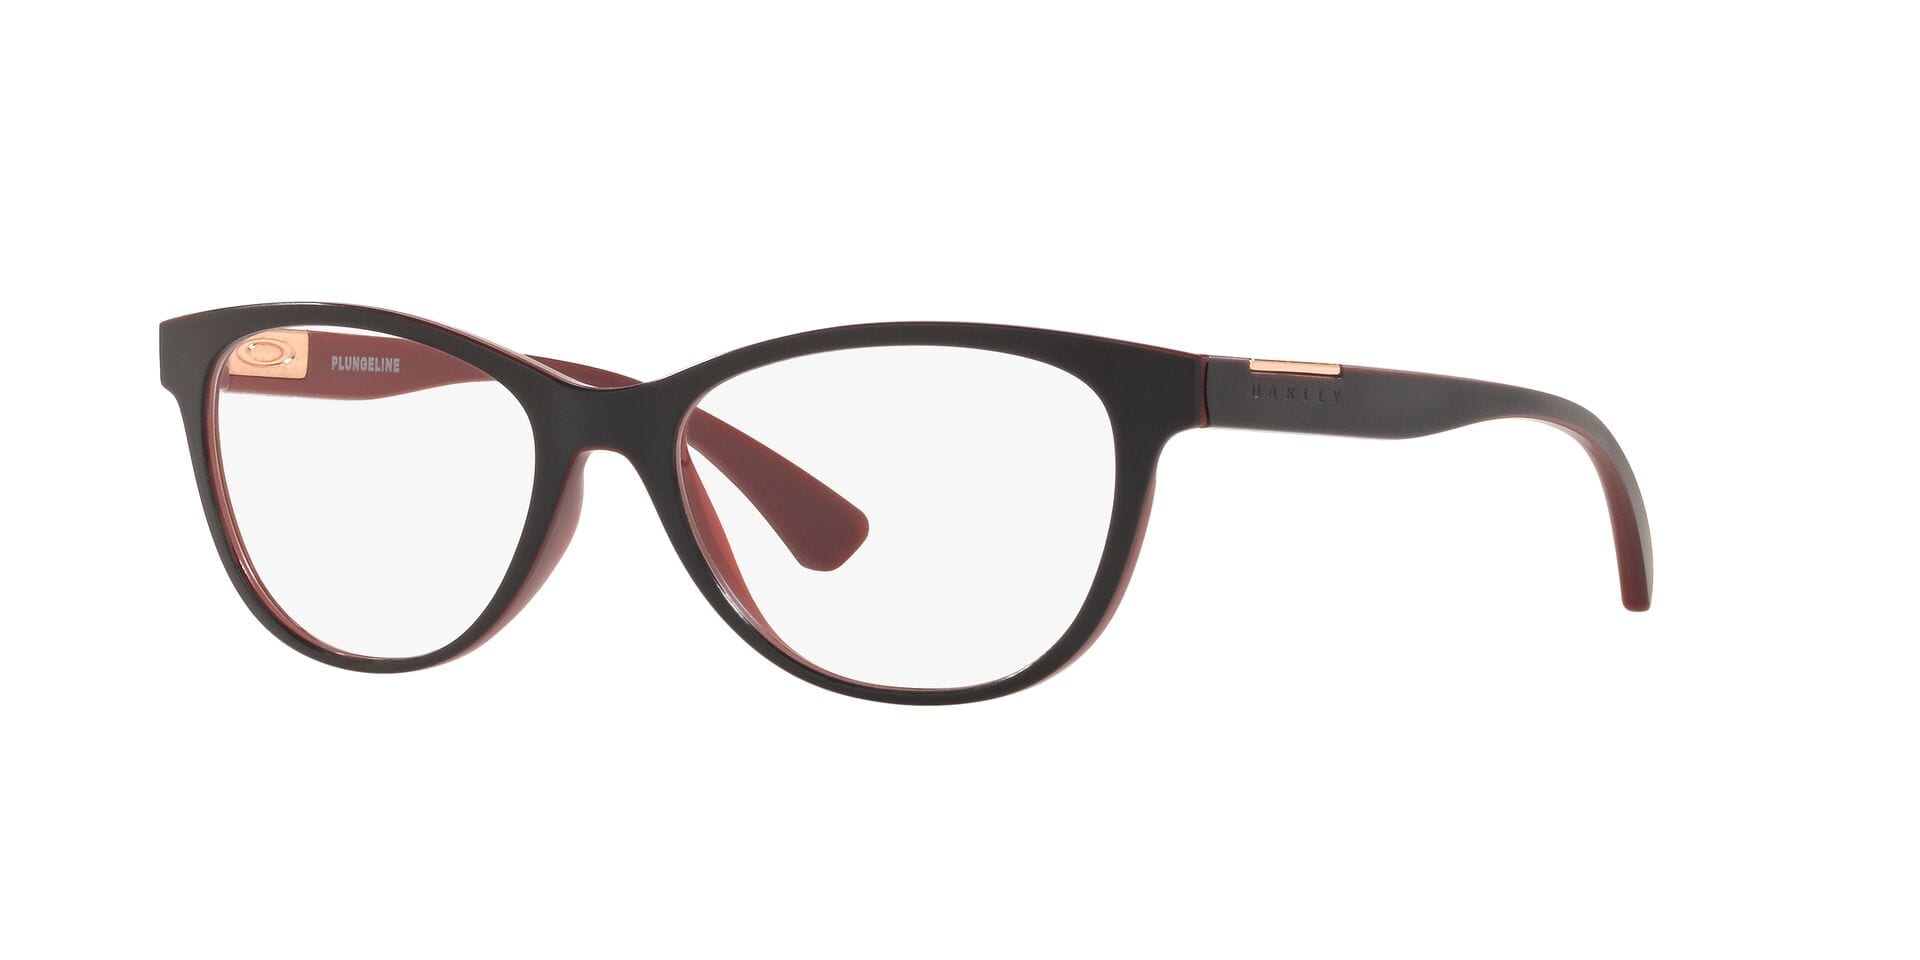 Oakley Plungeline Women's Glasses – ADS Lifestyle